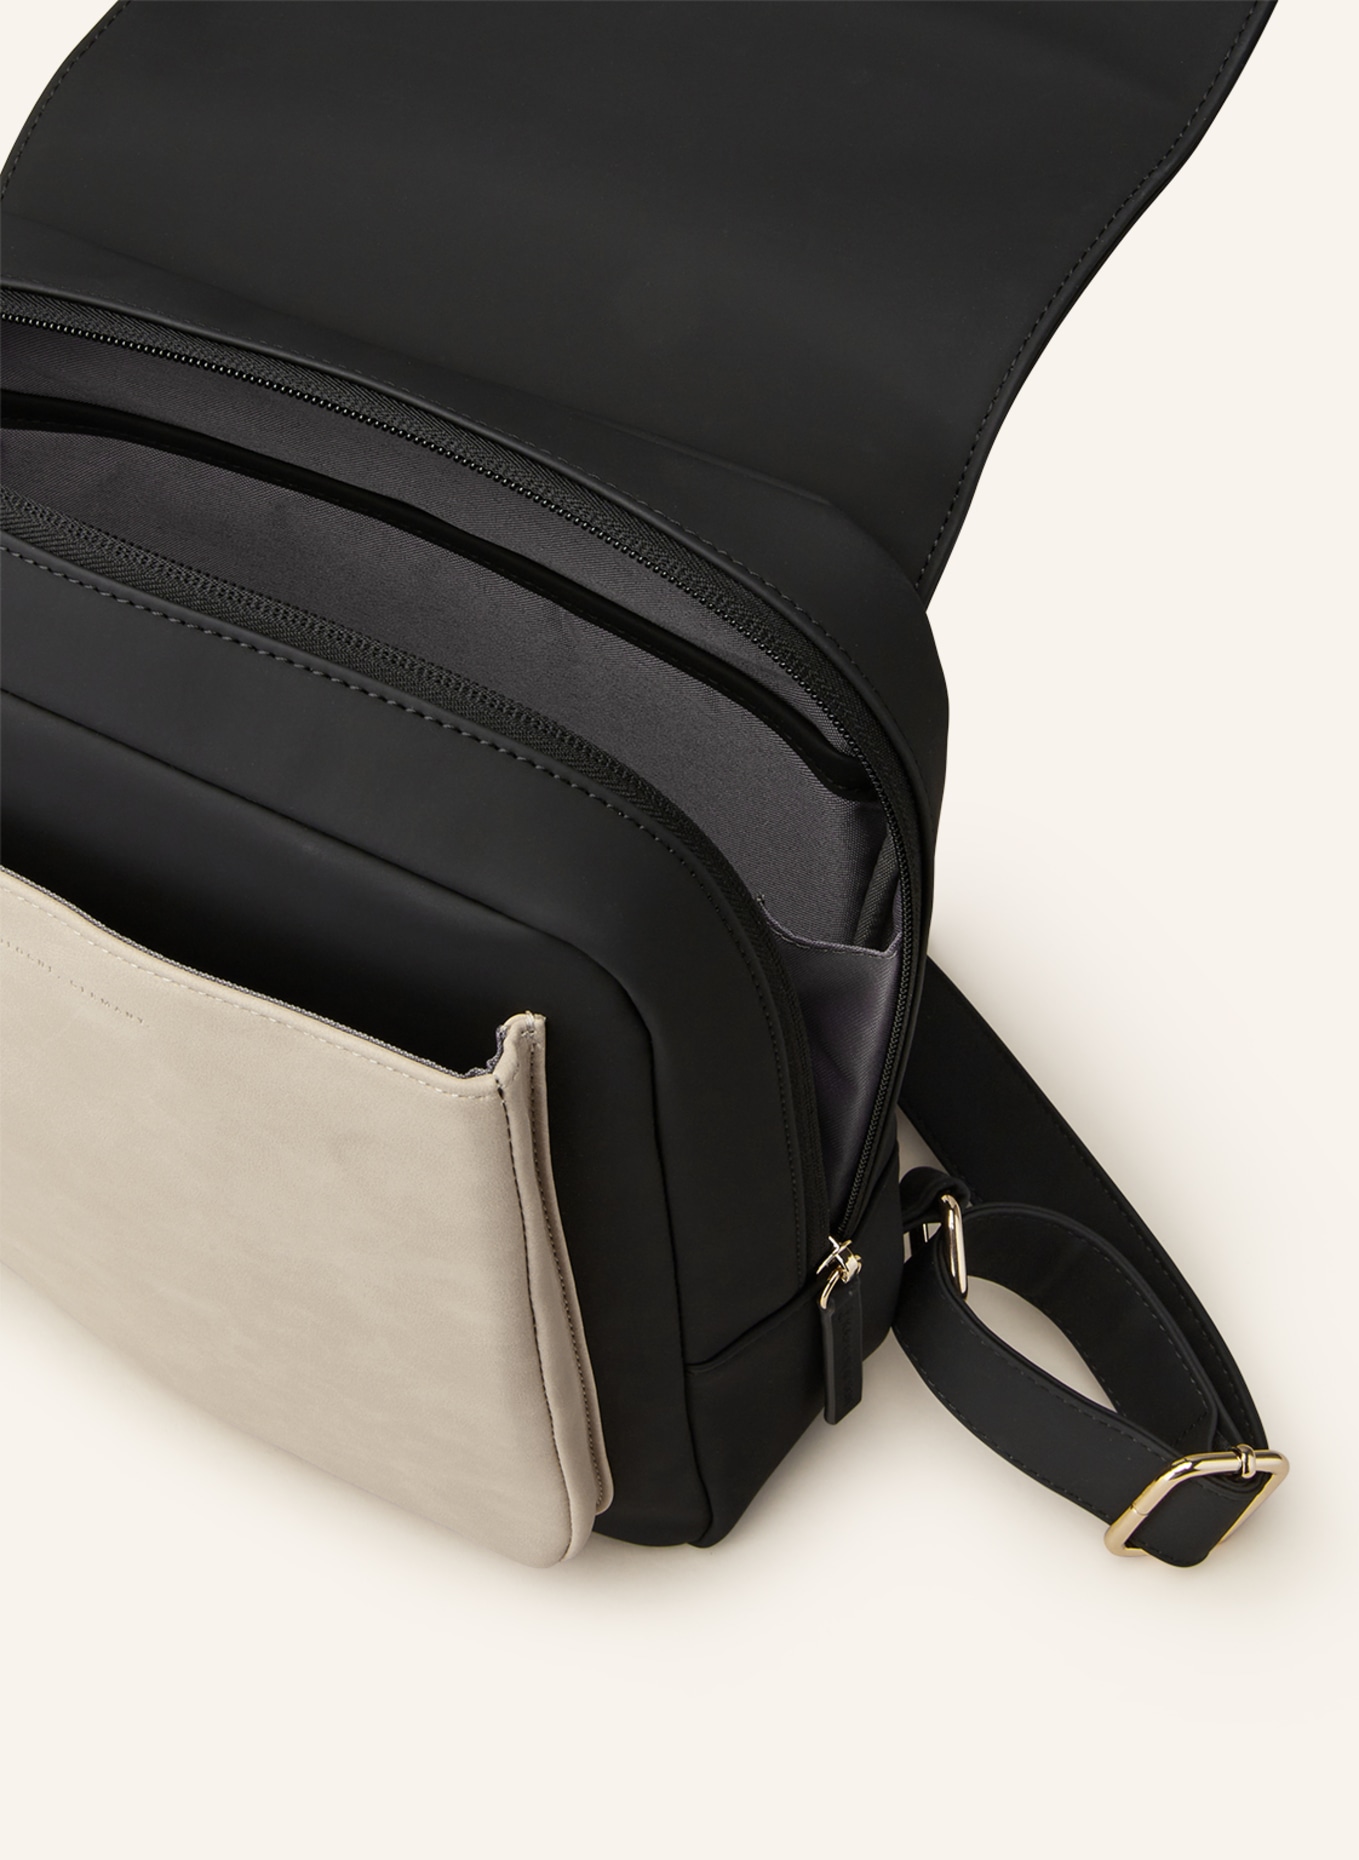 KAPTEN & SON Backpack TROMSO SMALL 9 l, Color: BLACK/ CREAM (Image 3)